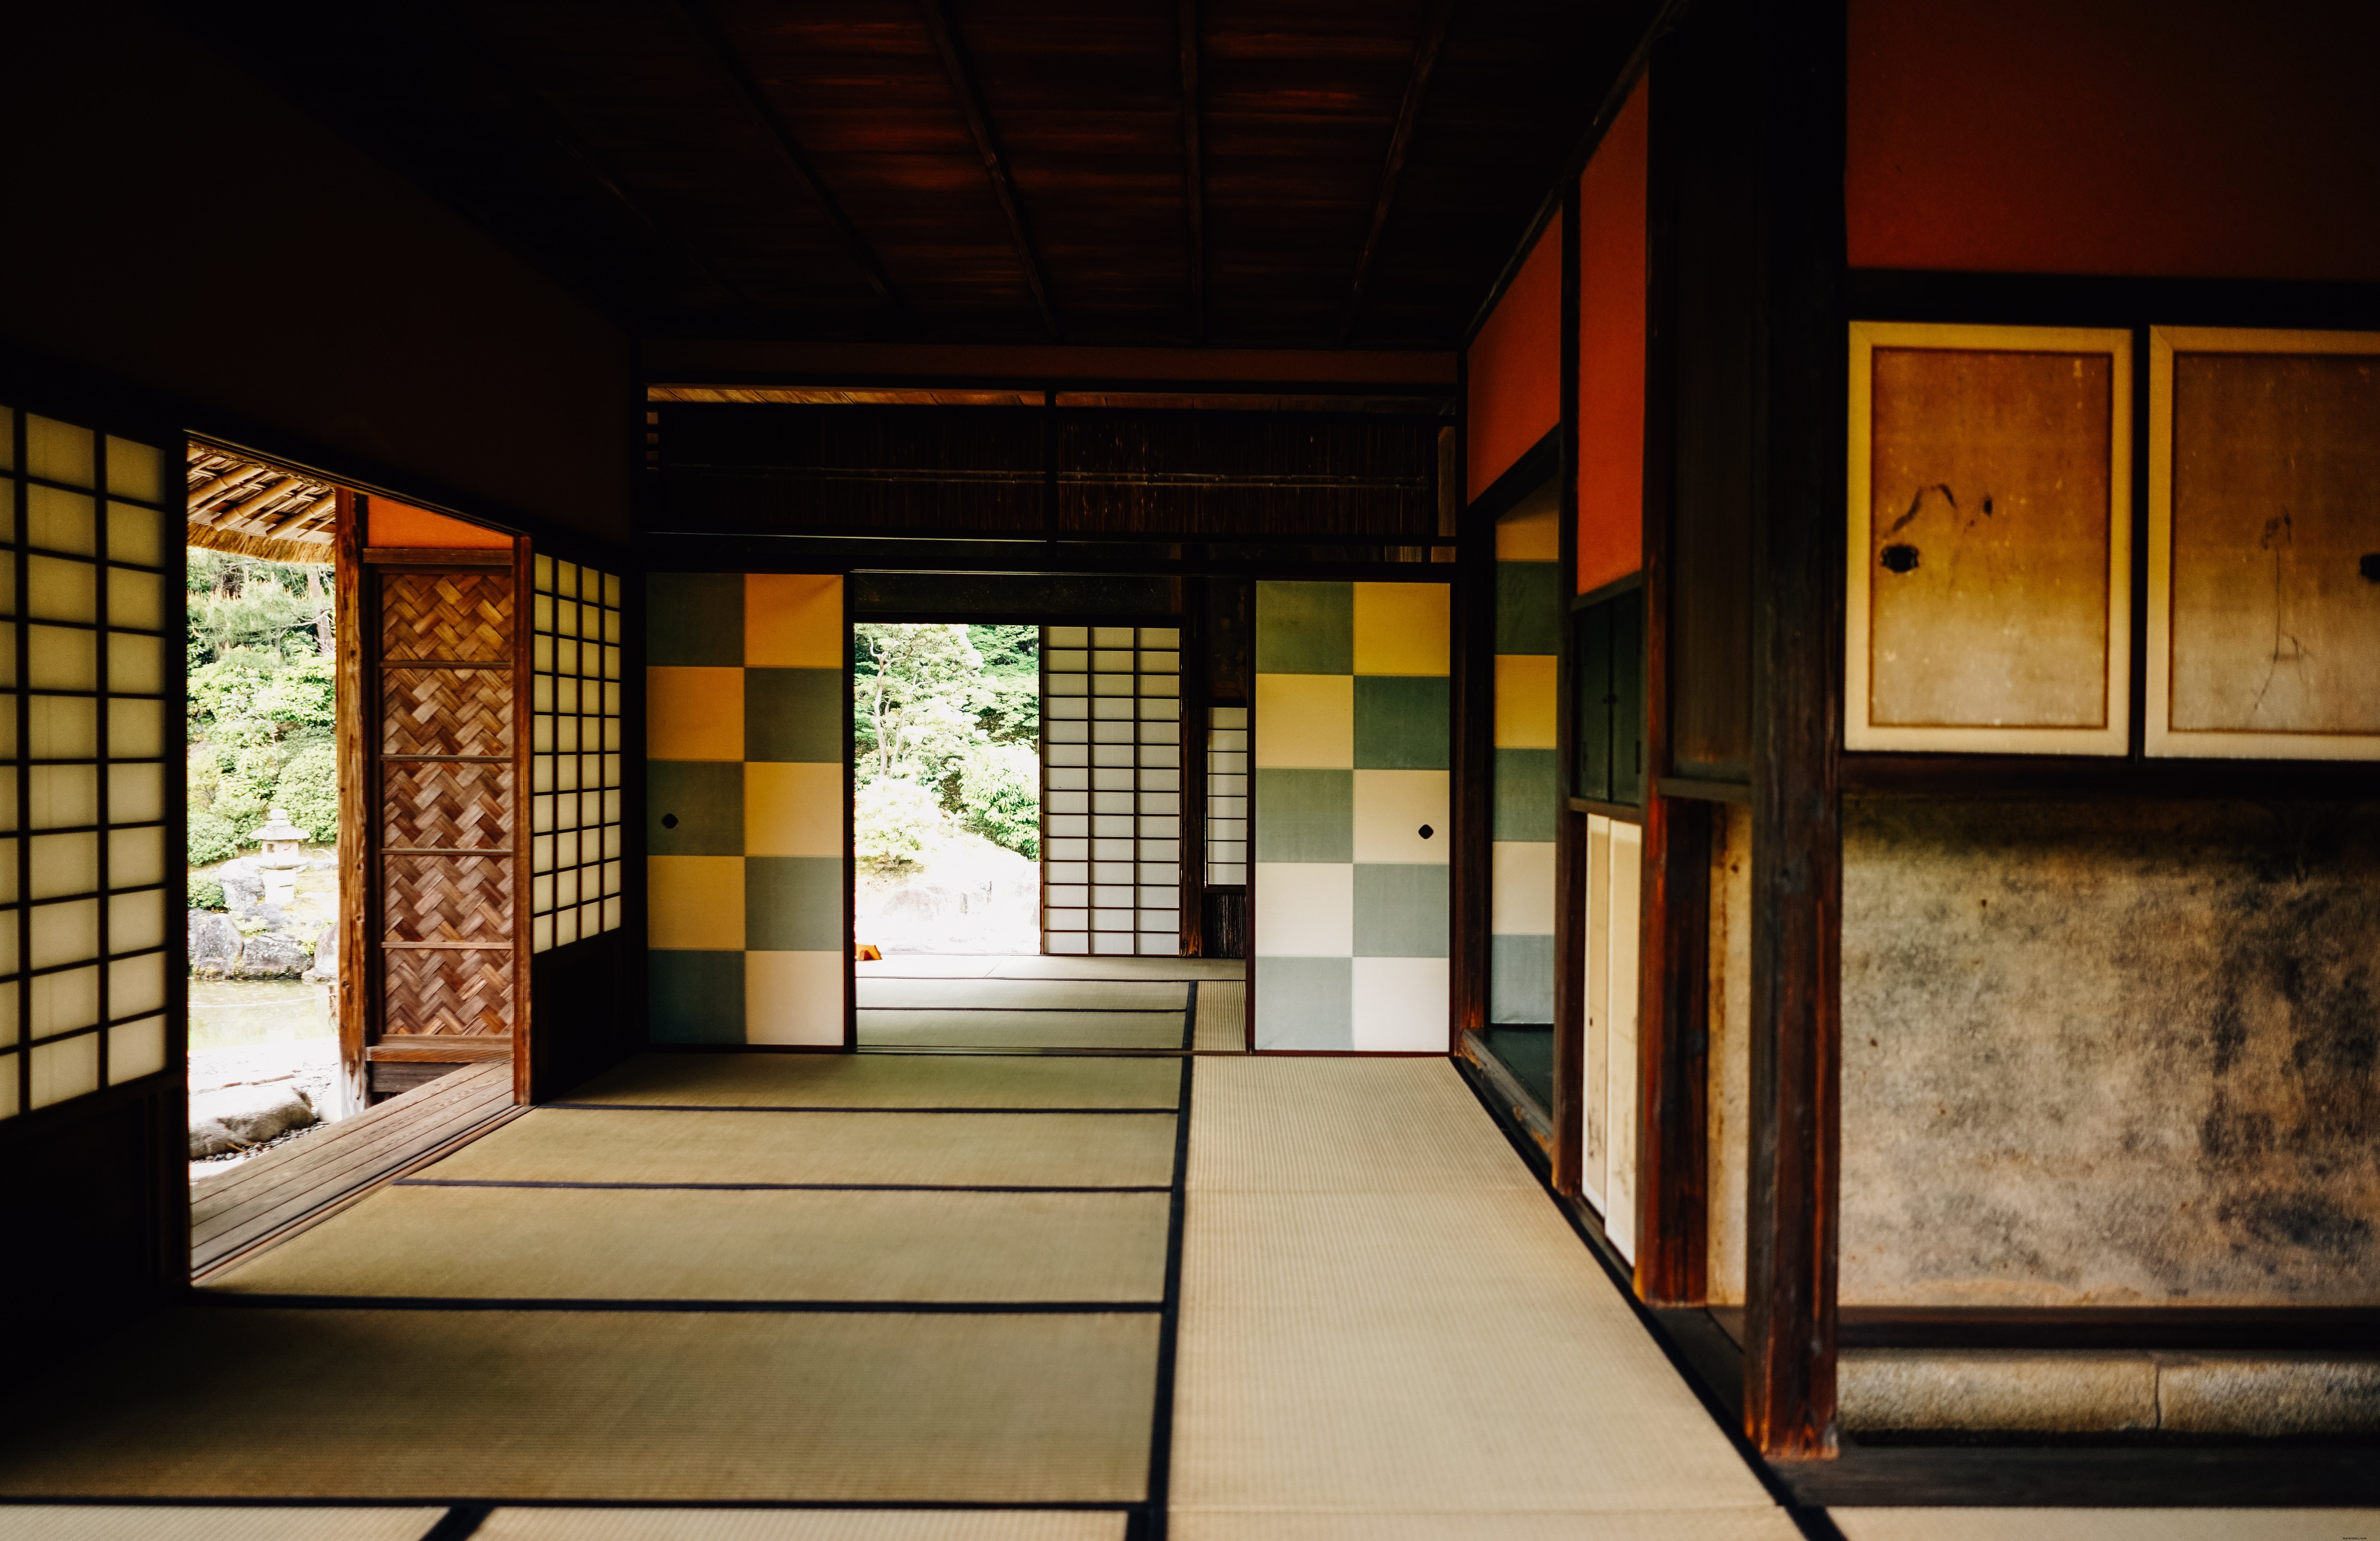 Foto de piso de tapete de tatame e portas de correr